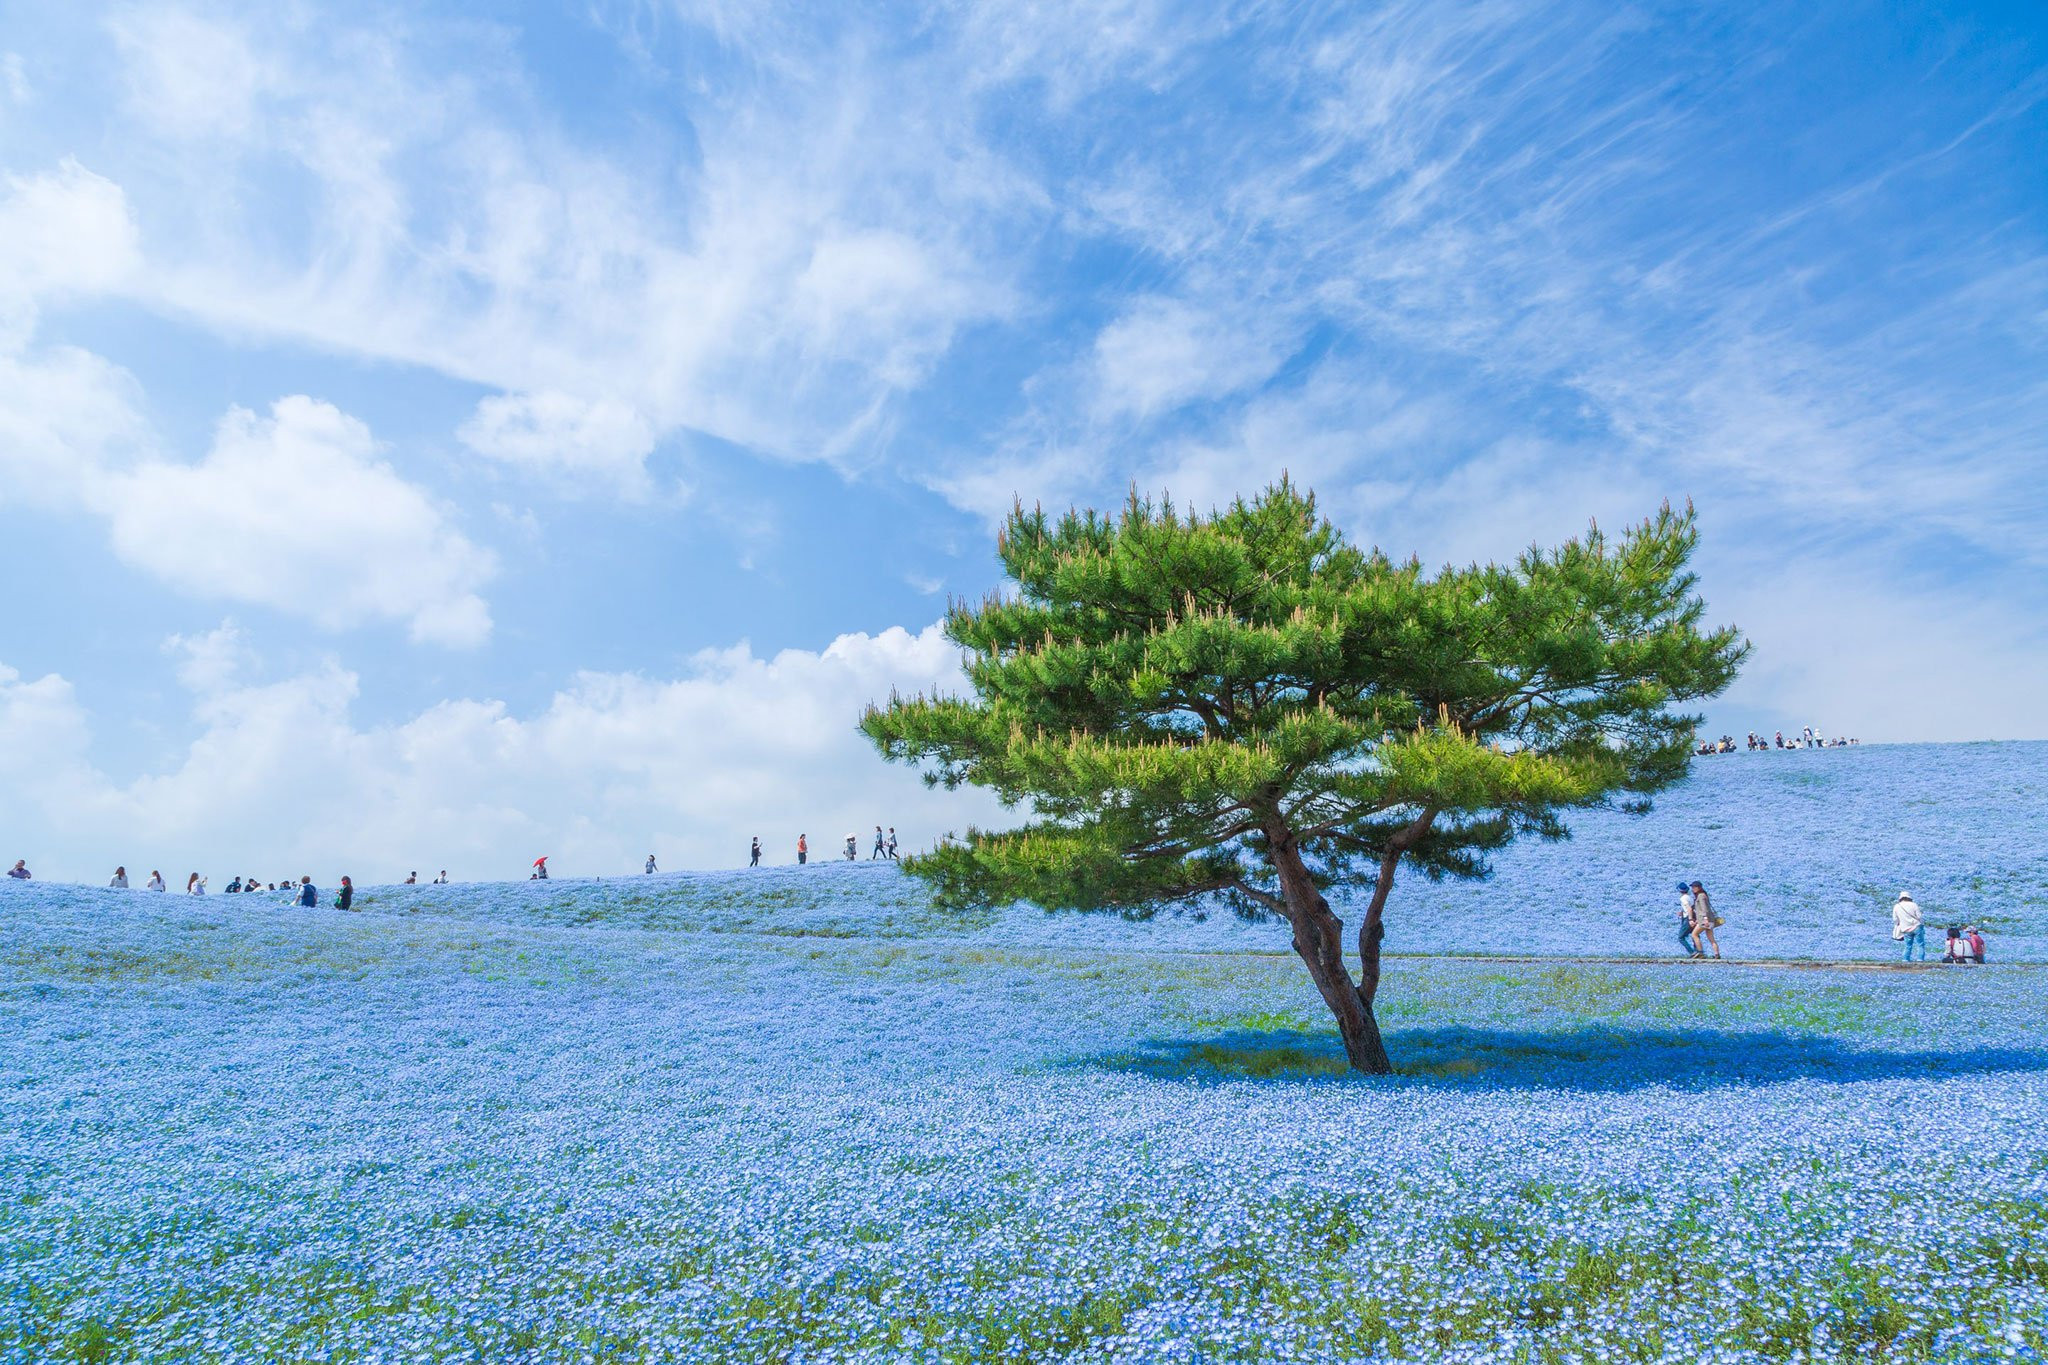 Danh sách 6 địa điểm "sống ảo" không thể bỏ qua khi đến nước Nhật - ảnh 5